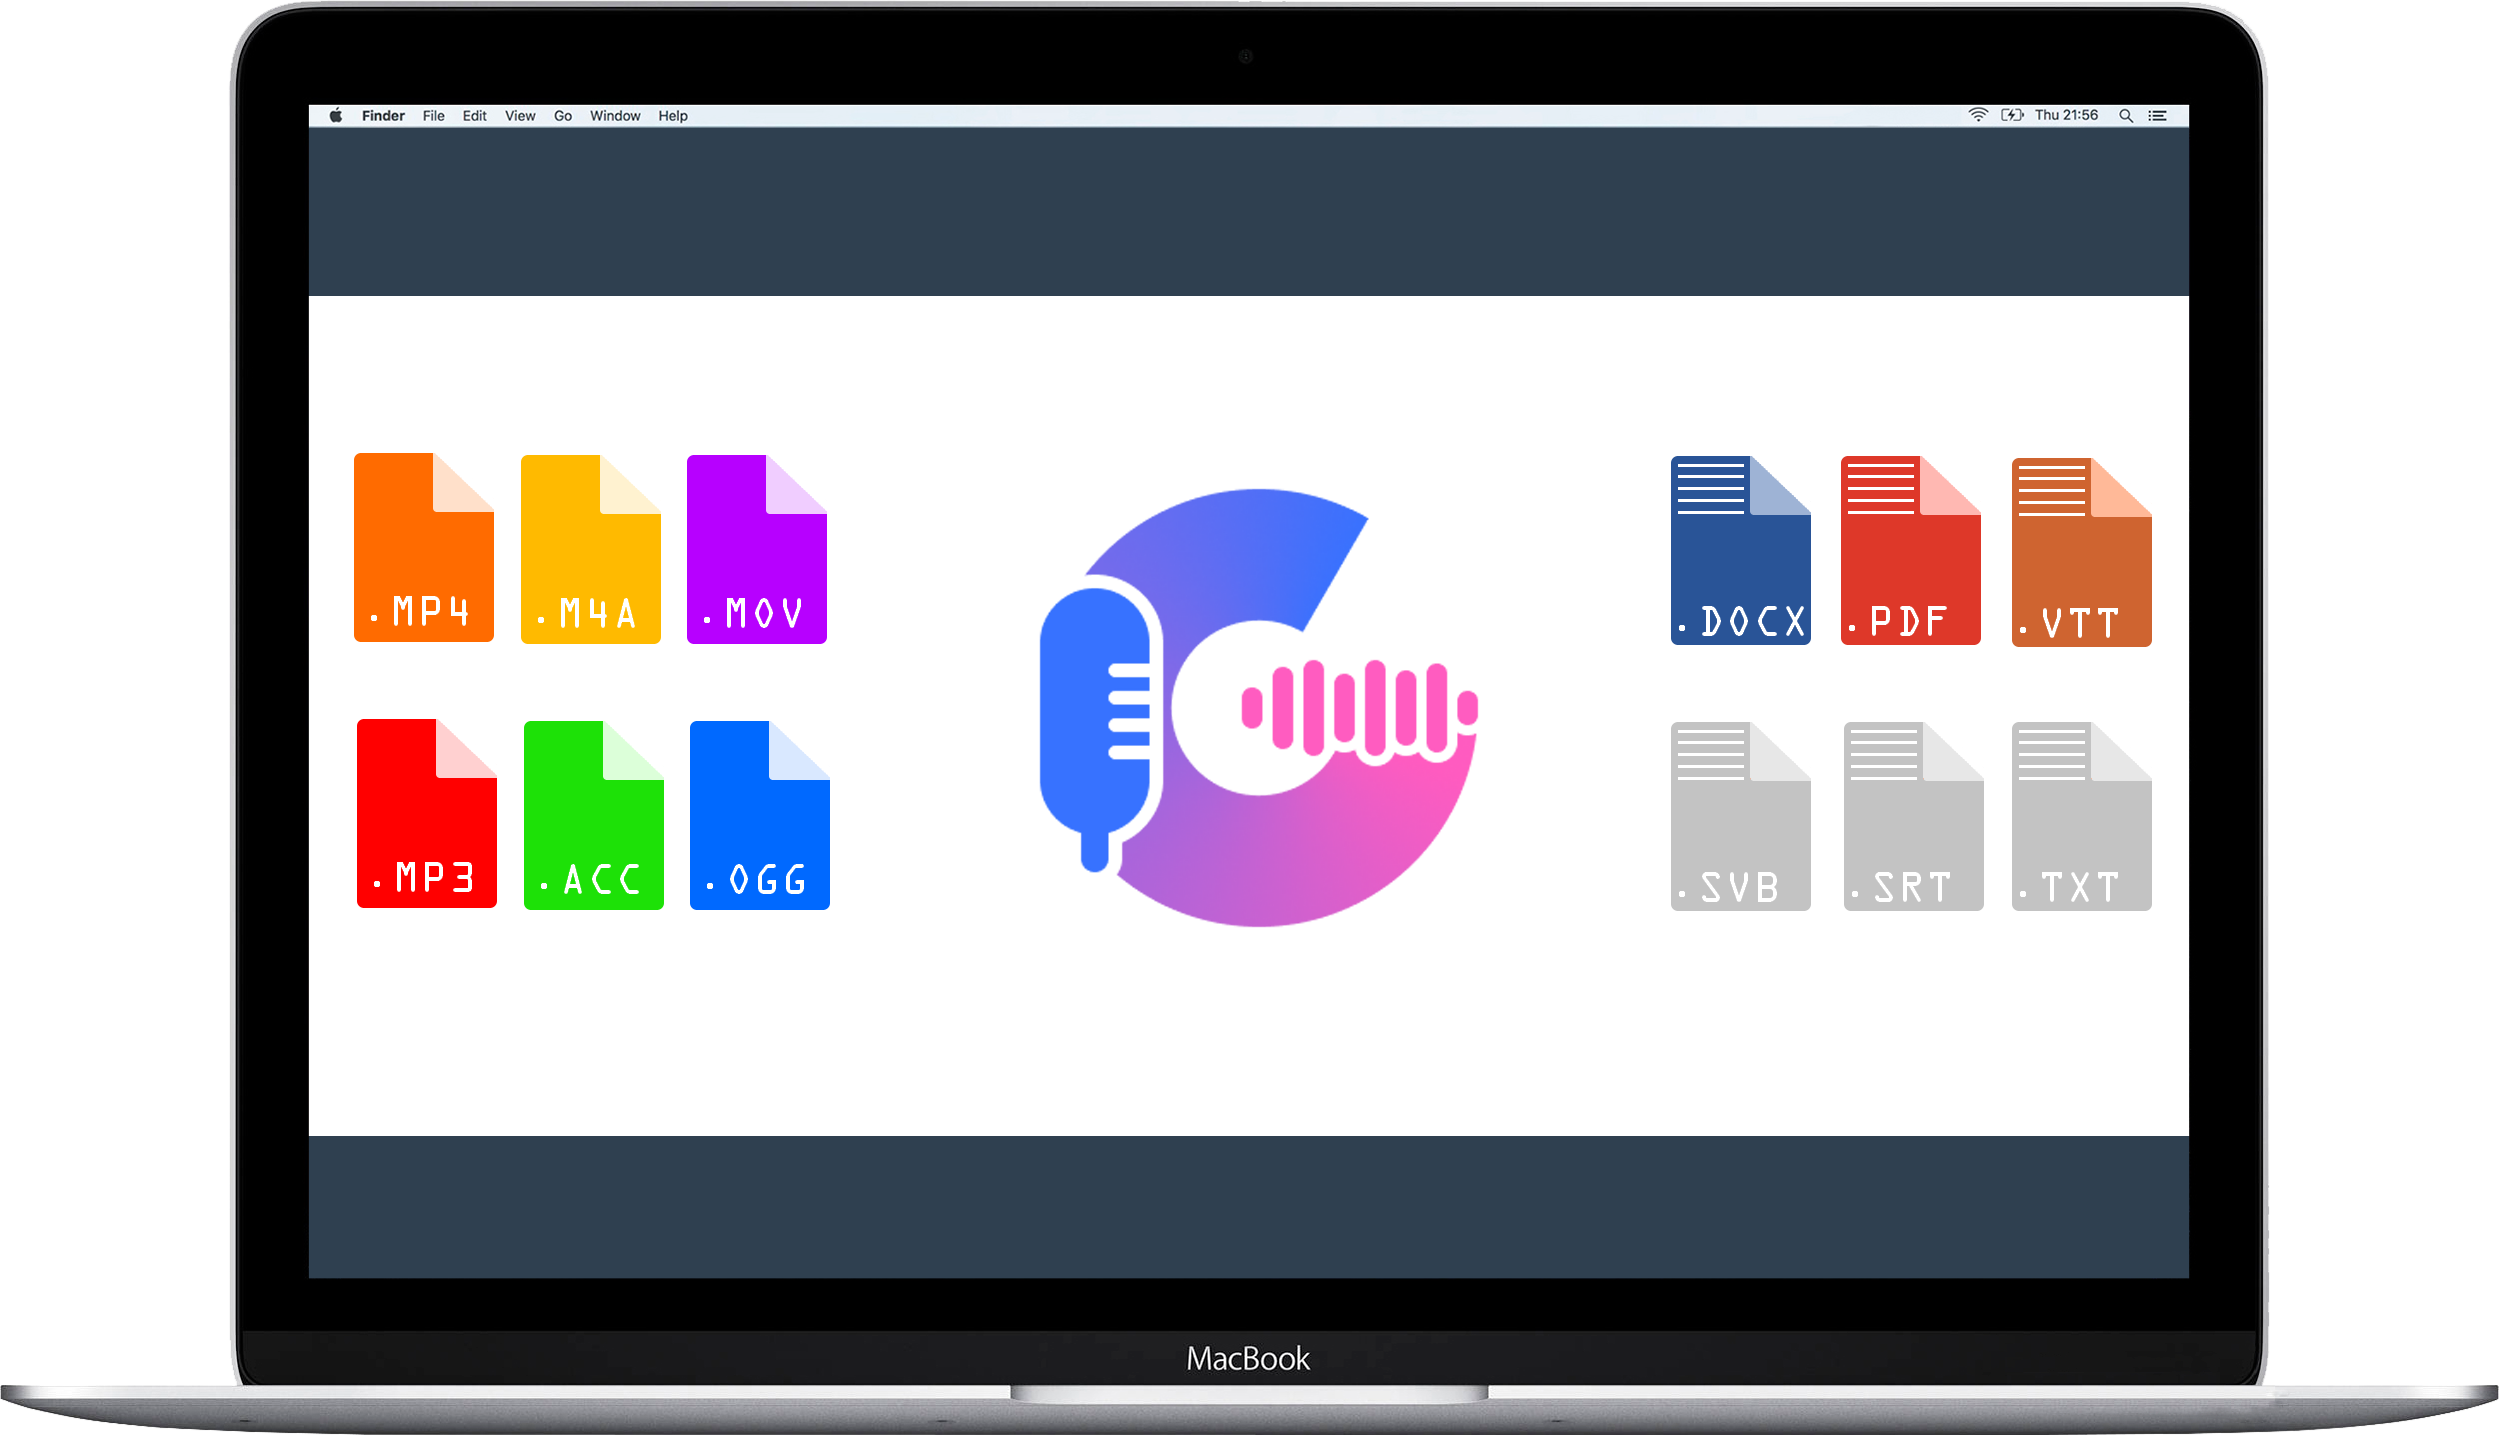 En Mac Studio- og Studio-skærm, der viser Gglot-transskriptionstjenestens dashboard.